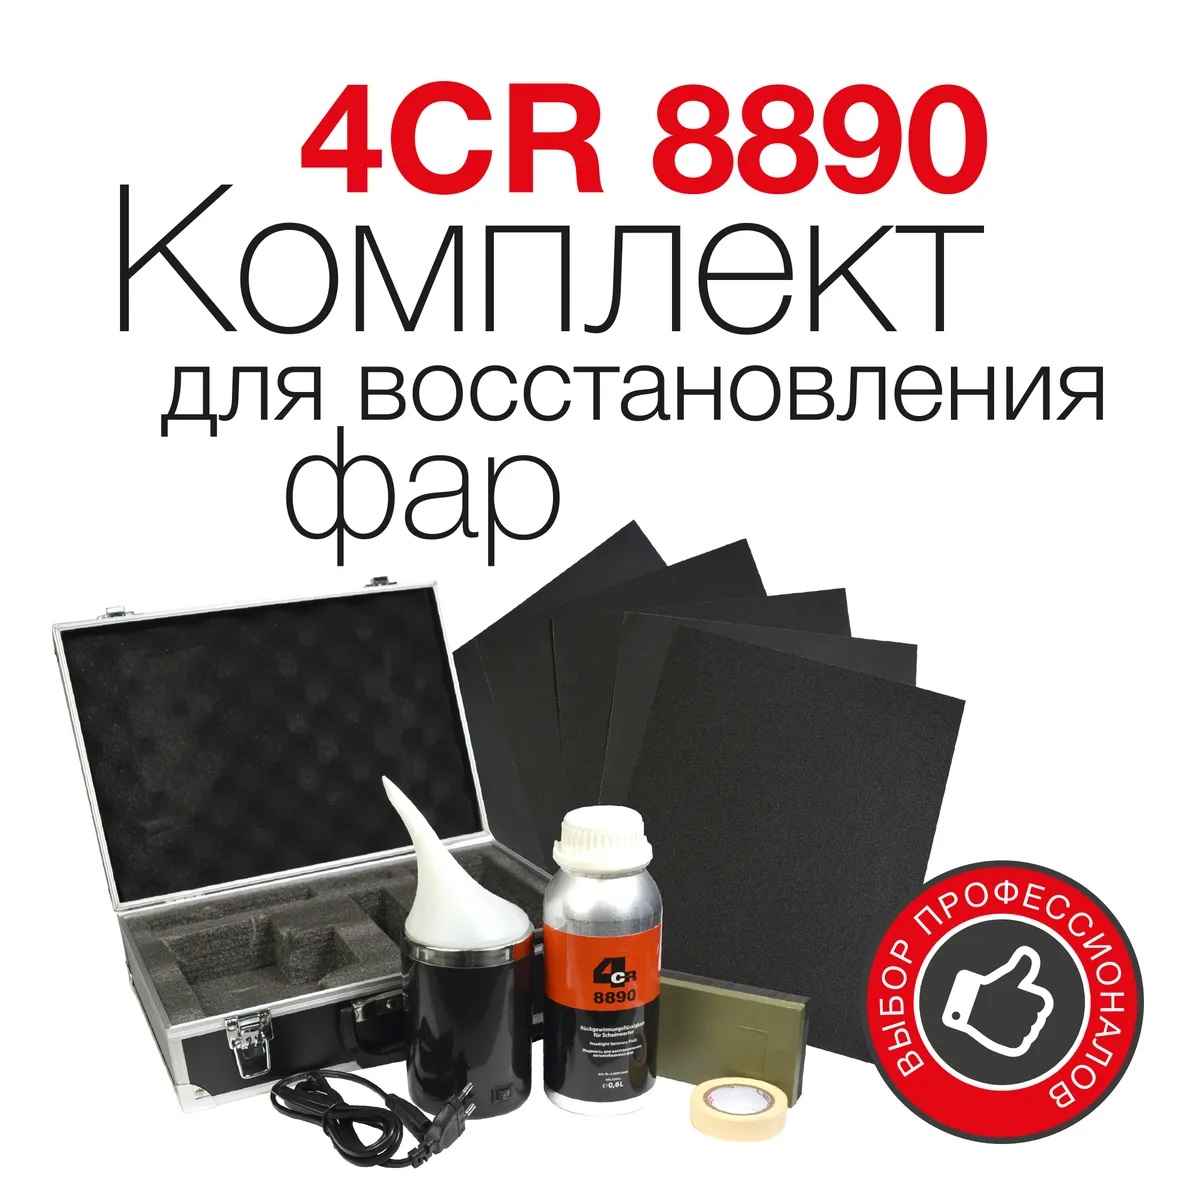 Комплект для восстановления фар 4CR 8890